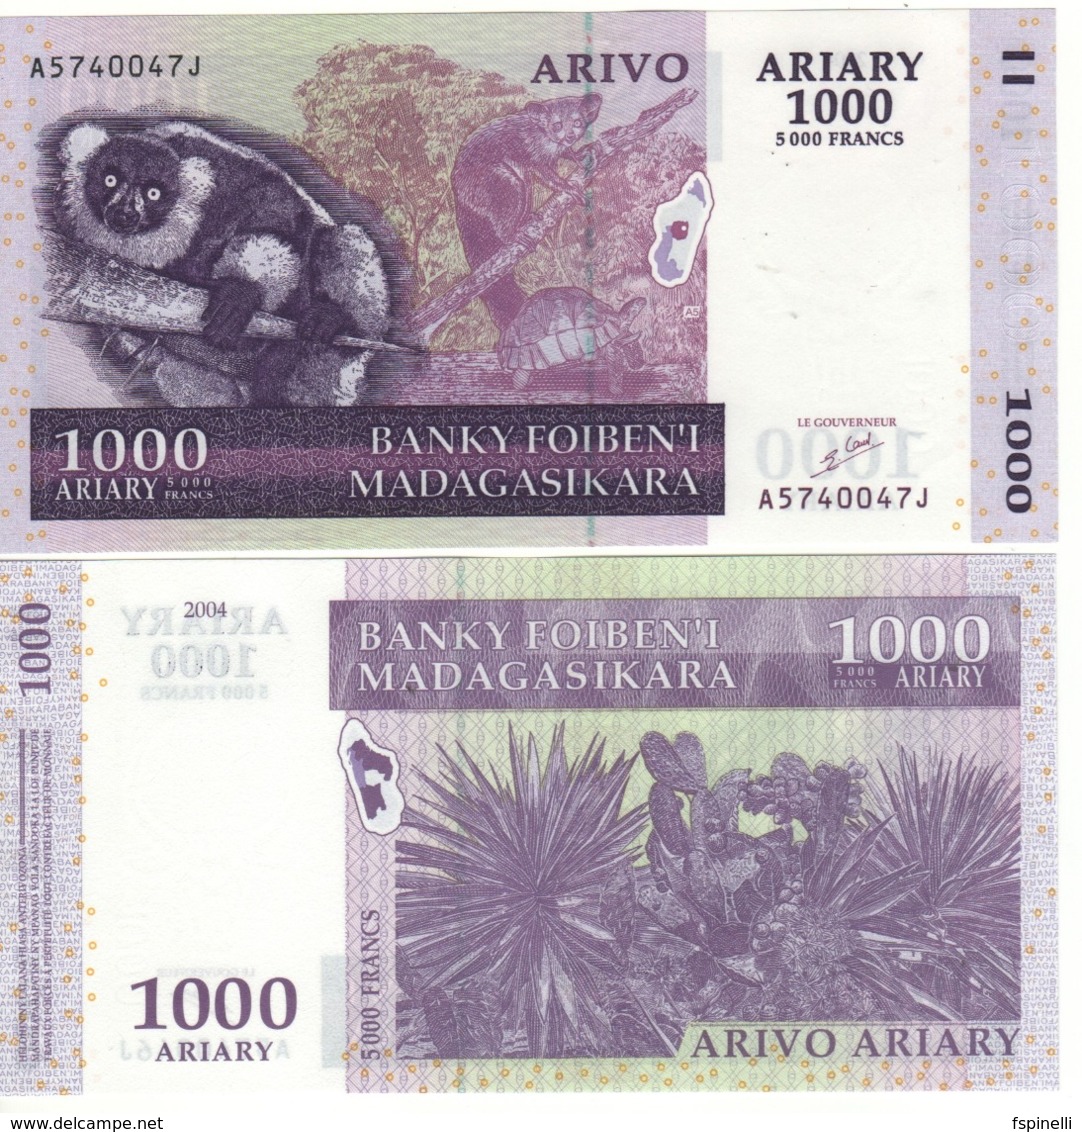 MADAGASCAR  1'000 Ariary  5'000 Francs      P89a  (ND  2004) - Madagascar